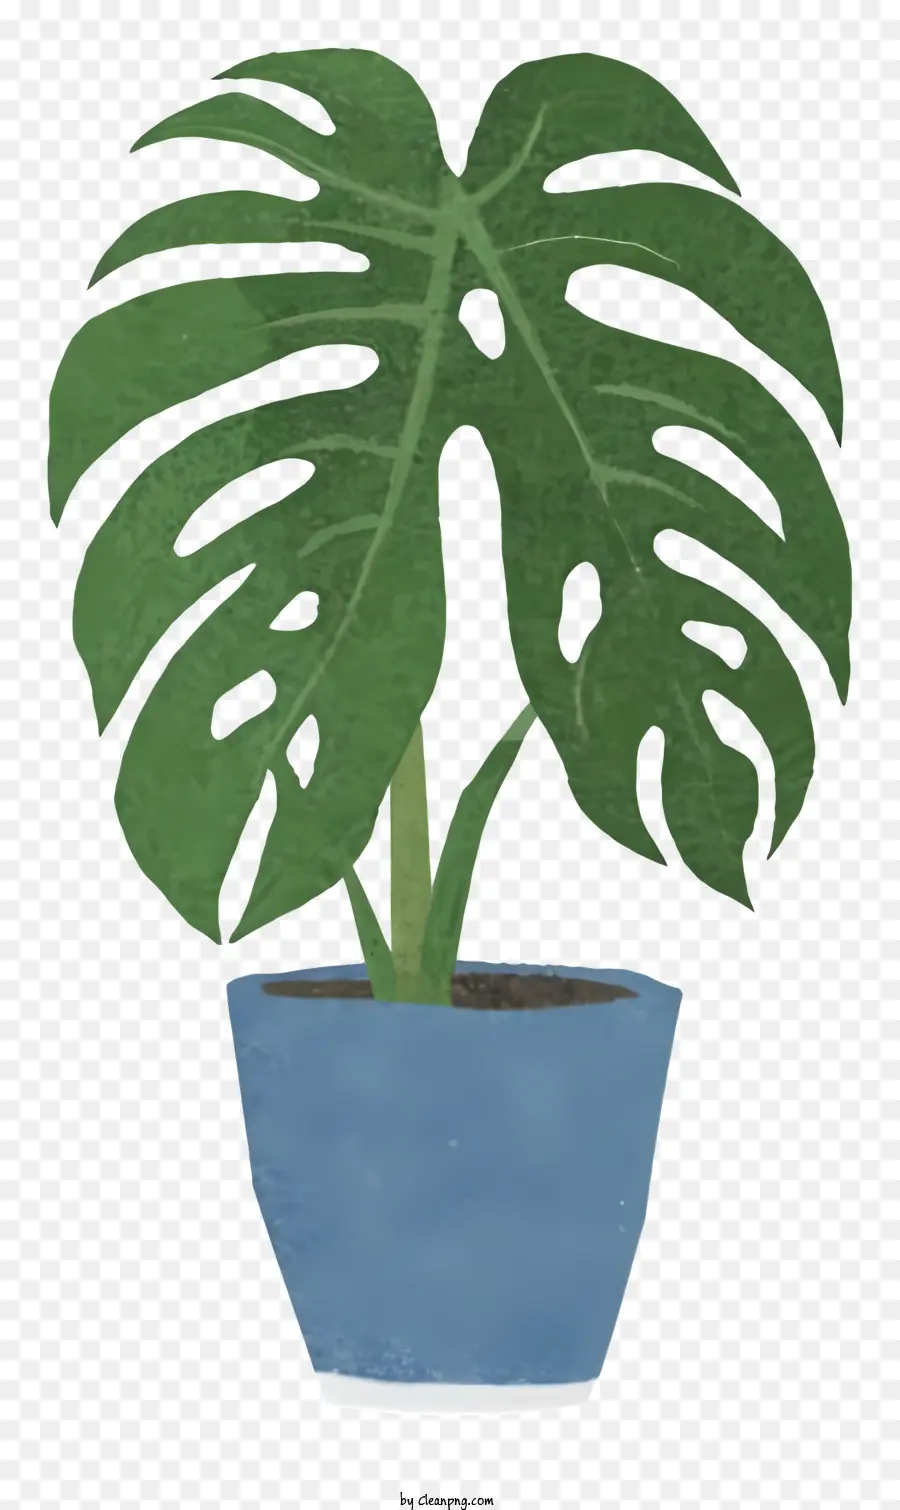 Großer blauer Topf Grüne Blattpflanze Leanpflanze ausbreiten Blätter blau getönter Topf - Großer blauer Topf mit grüner Blattpflanze